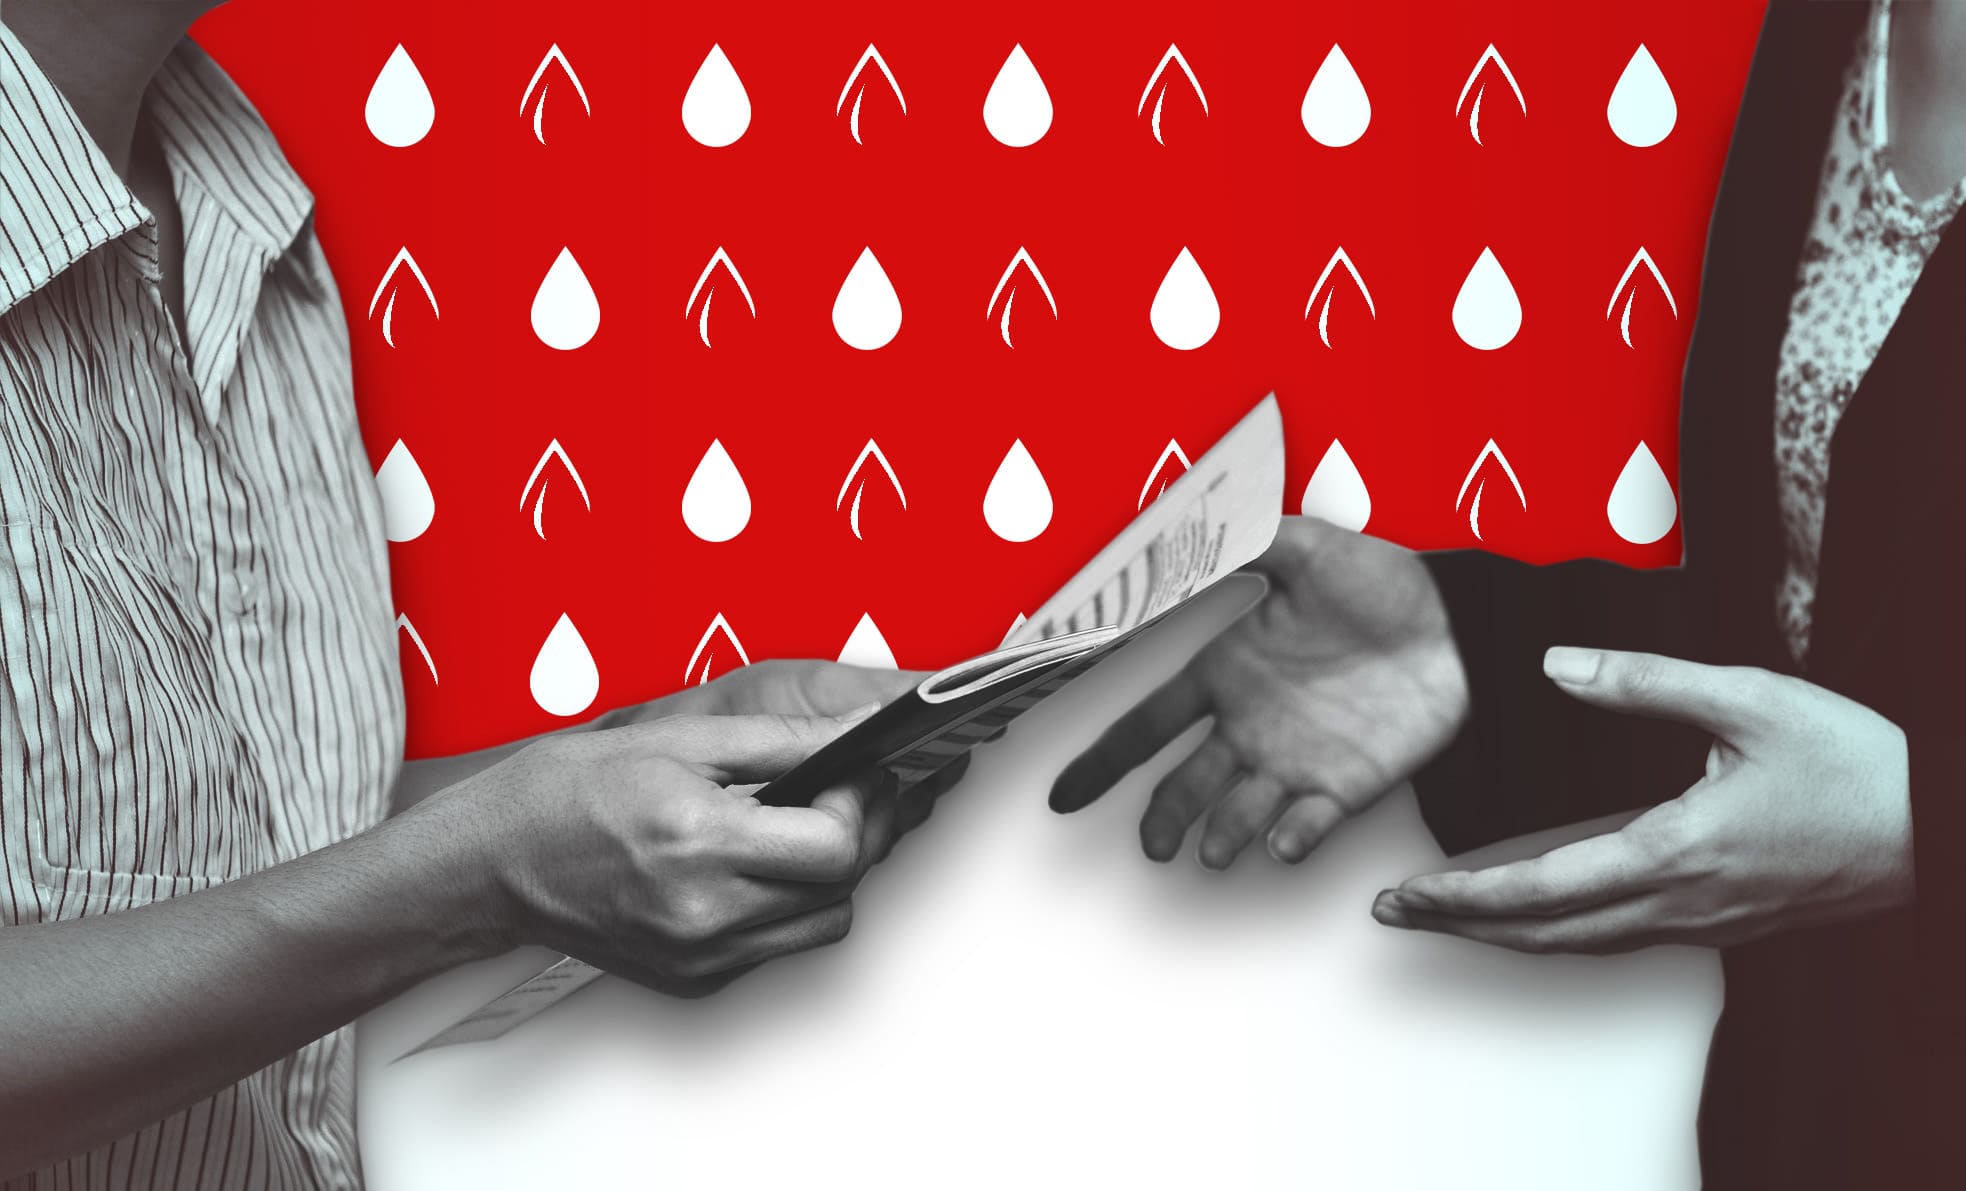 Группы крови: система AB0 и совместимость, Журнал DonorSearch